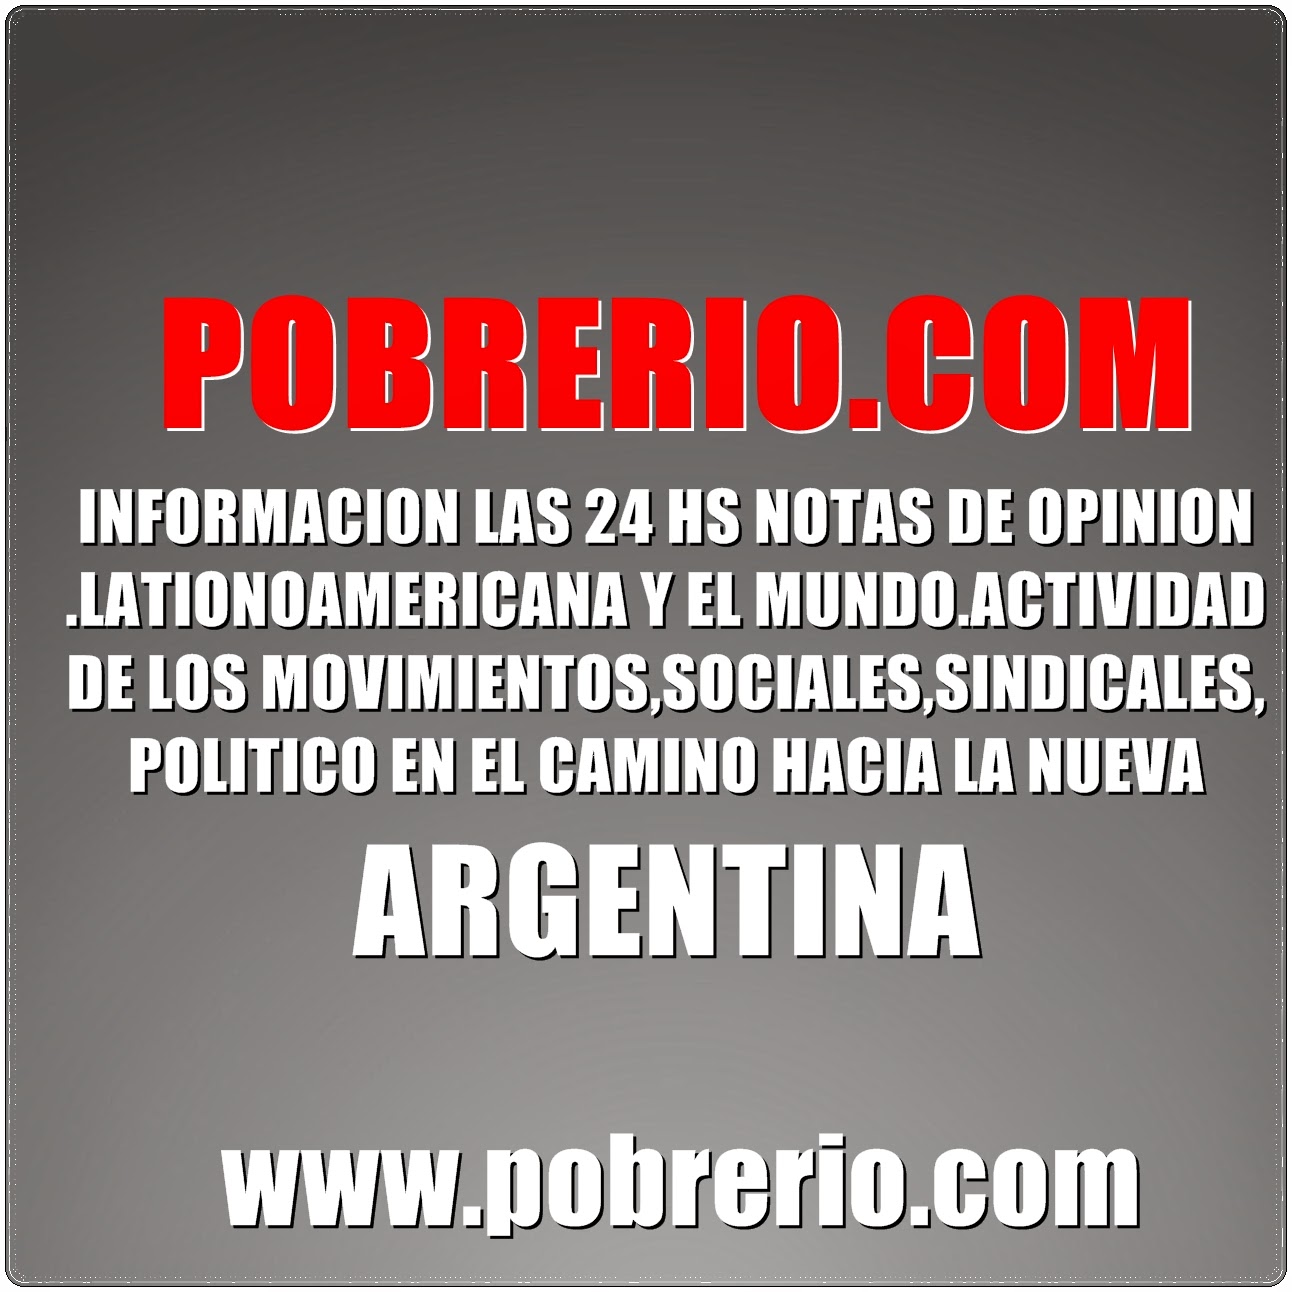 POBRERIO.COM